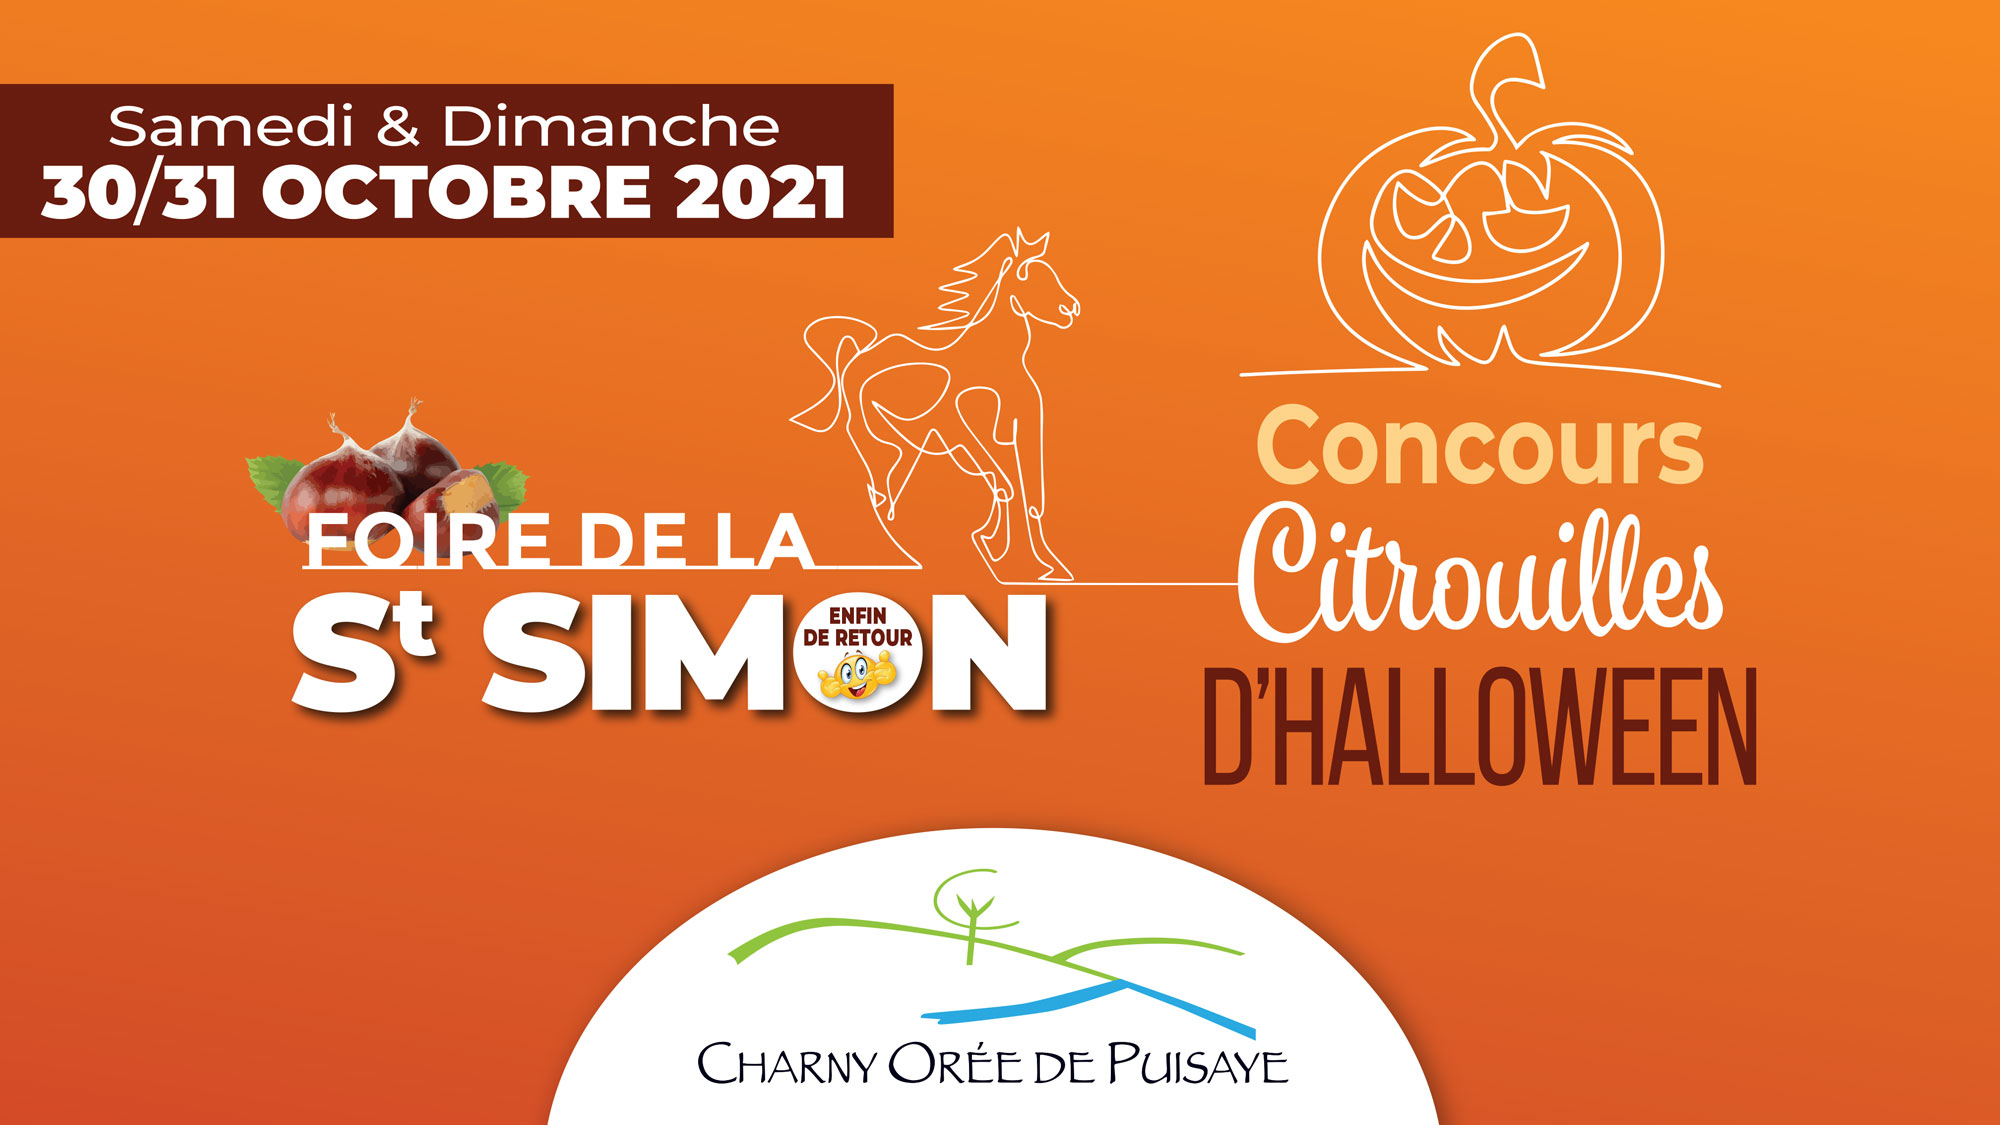 Concours de citrouilles d'Halloween de la Foire de la St Simon à Charny Orée de Puisaye